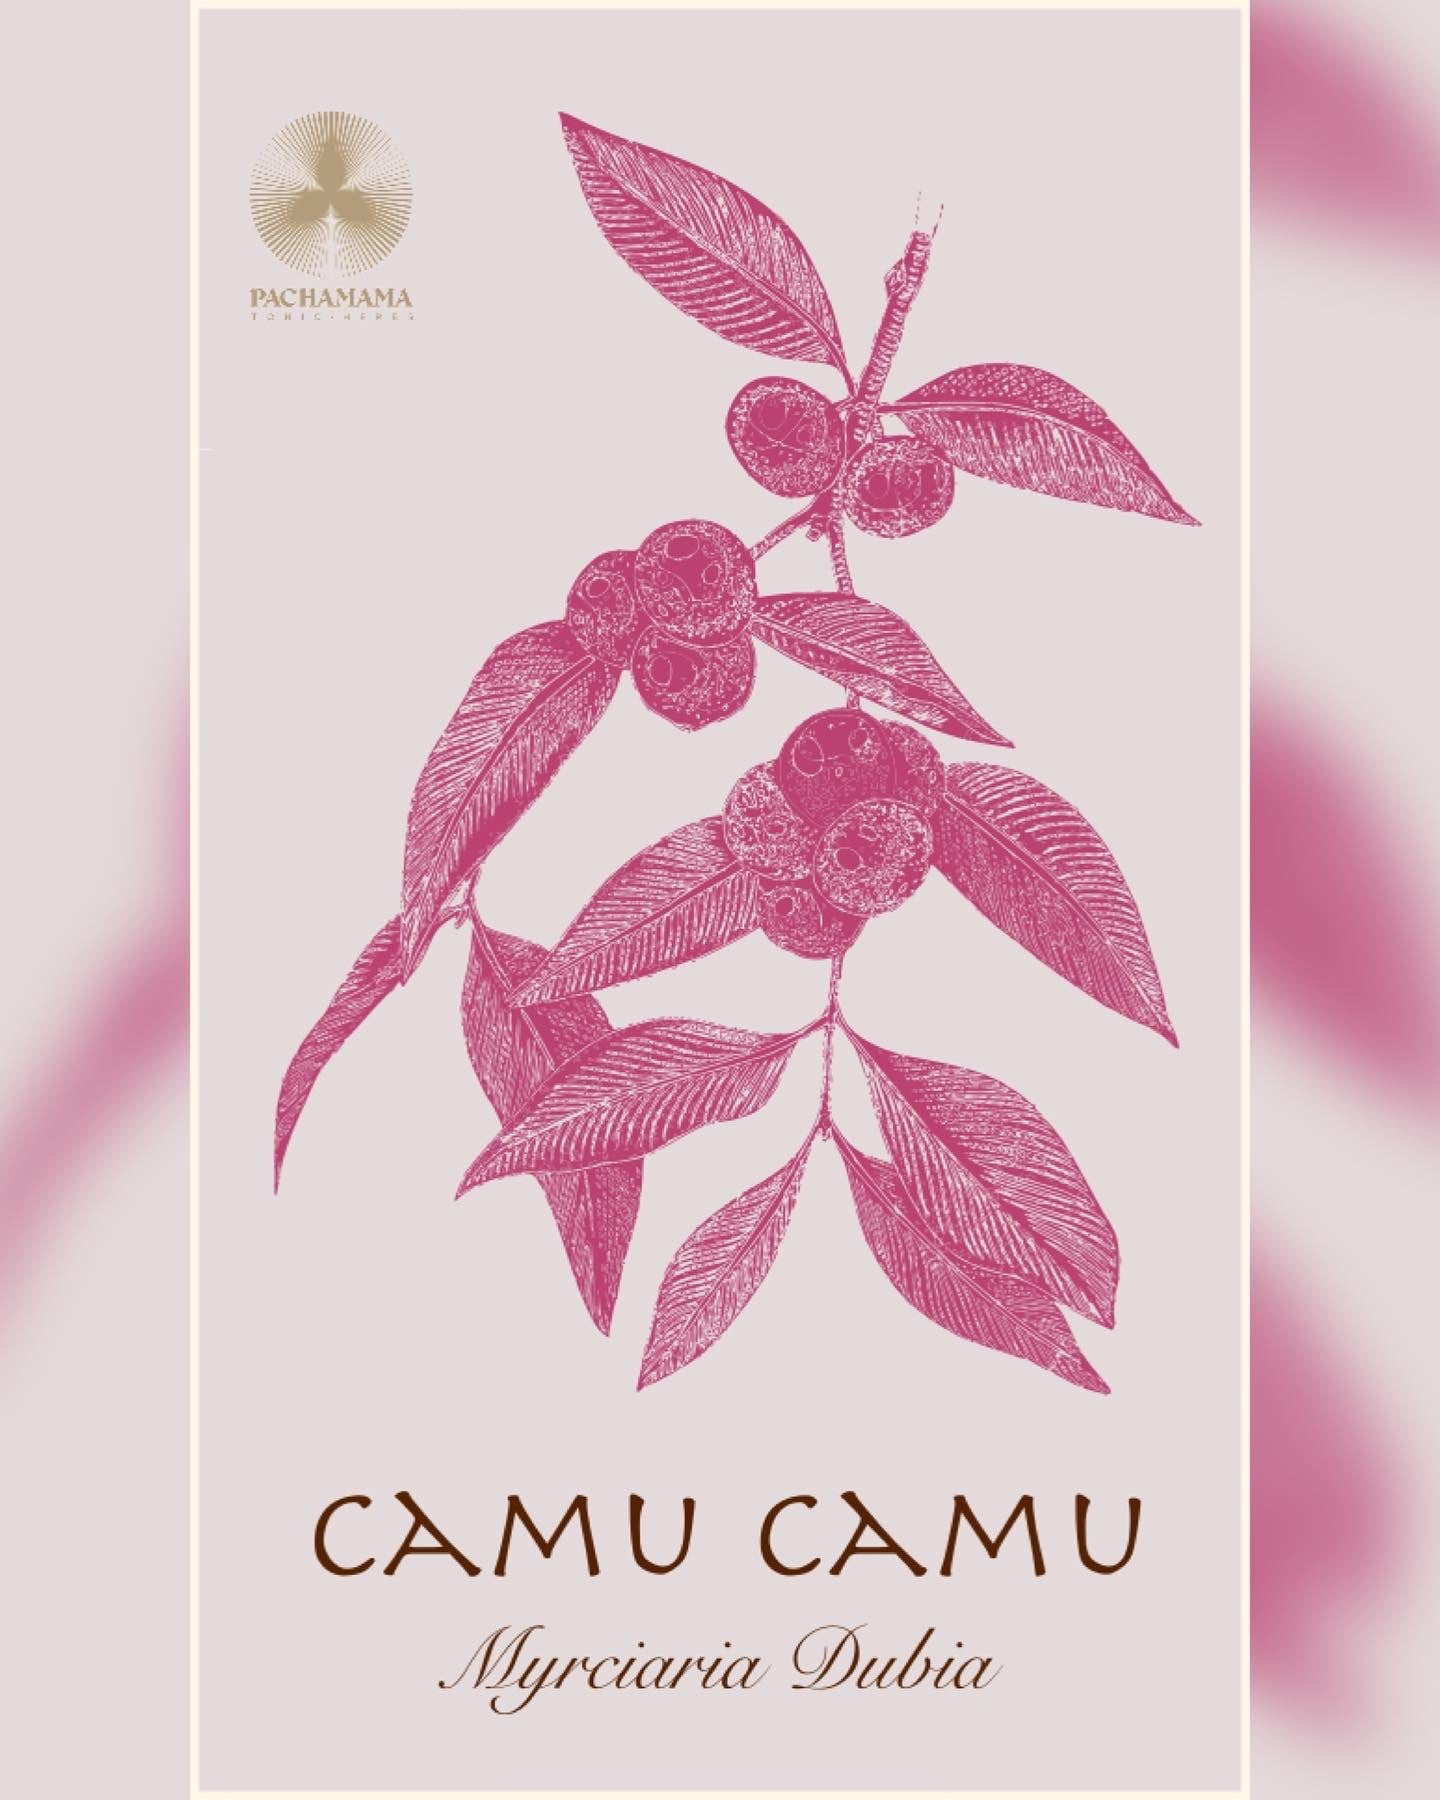 Camu Camu | Camu camu